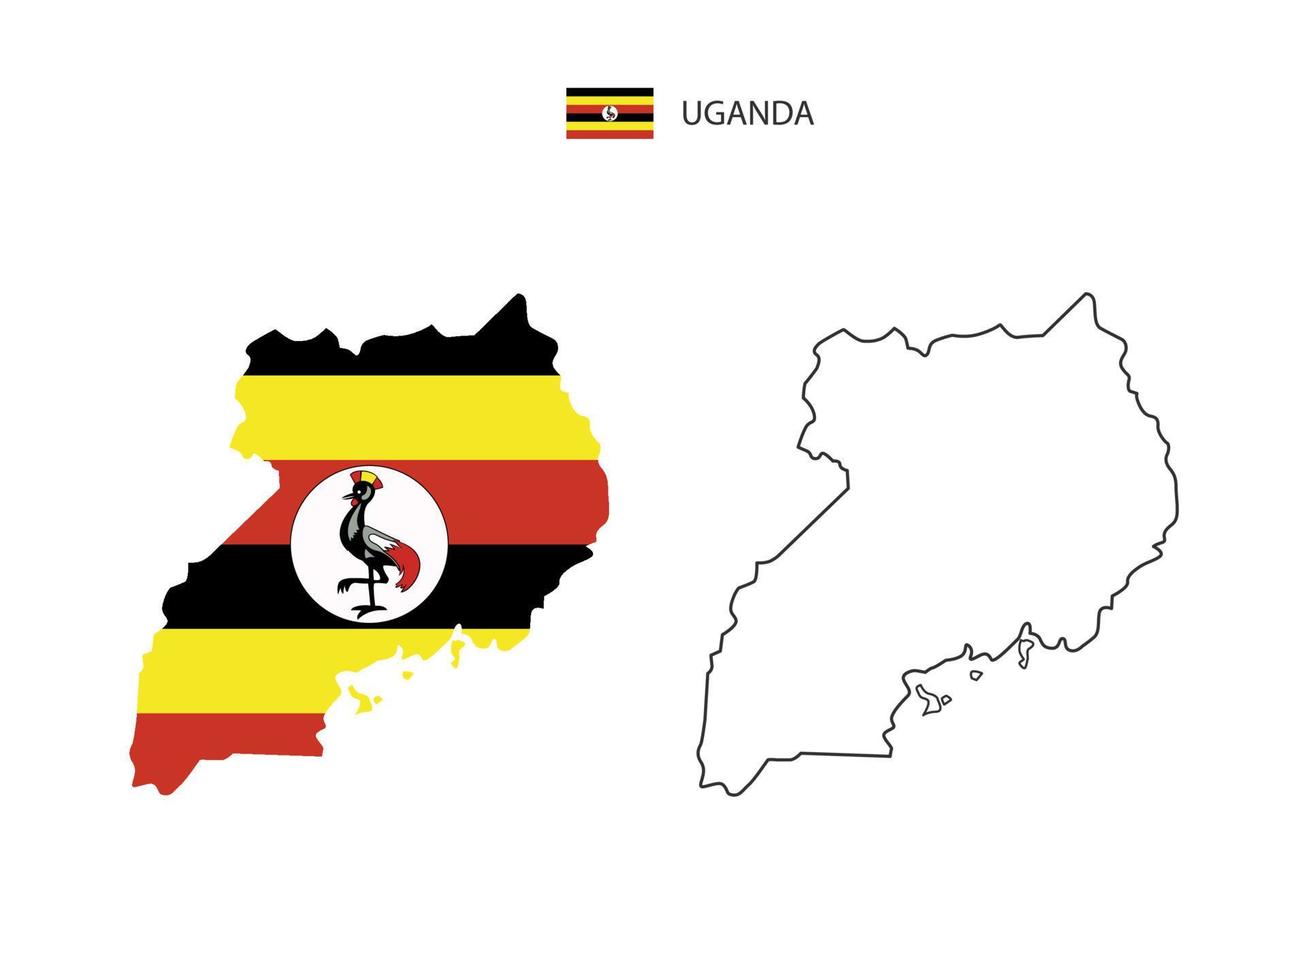 vetor da cidade do mapa de uganda dividido pelo estilo de simplicidade do contorno. tem 2 versões, versão de linha fina preta e cor da versão da bandeira do país. ambos os mapas estavam no fundo branco.